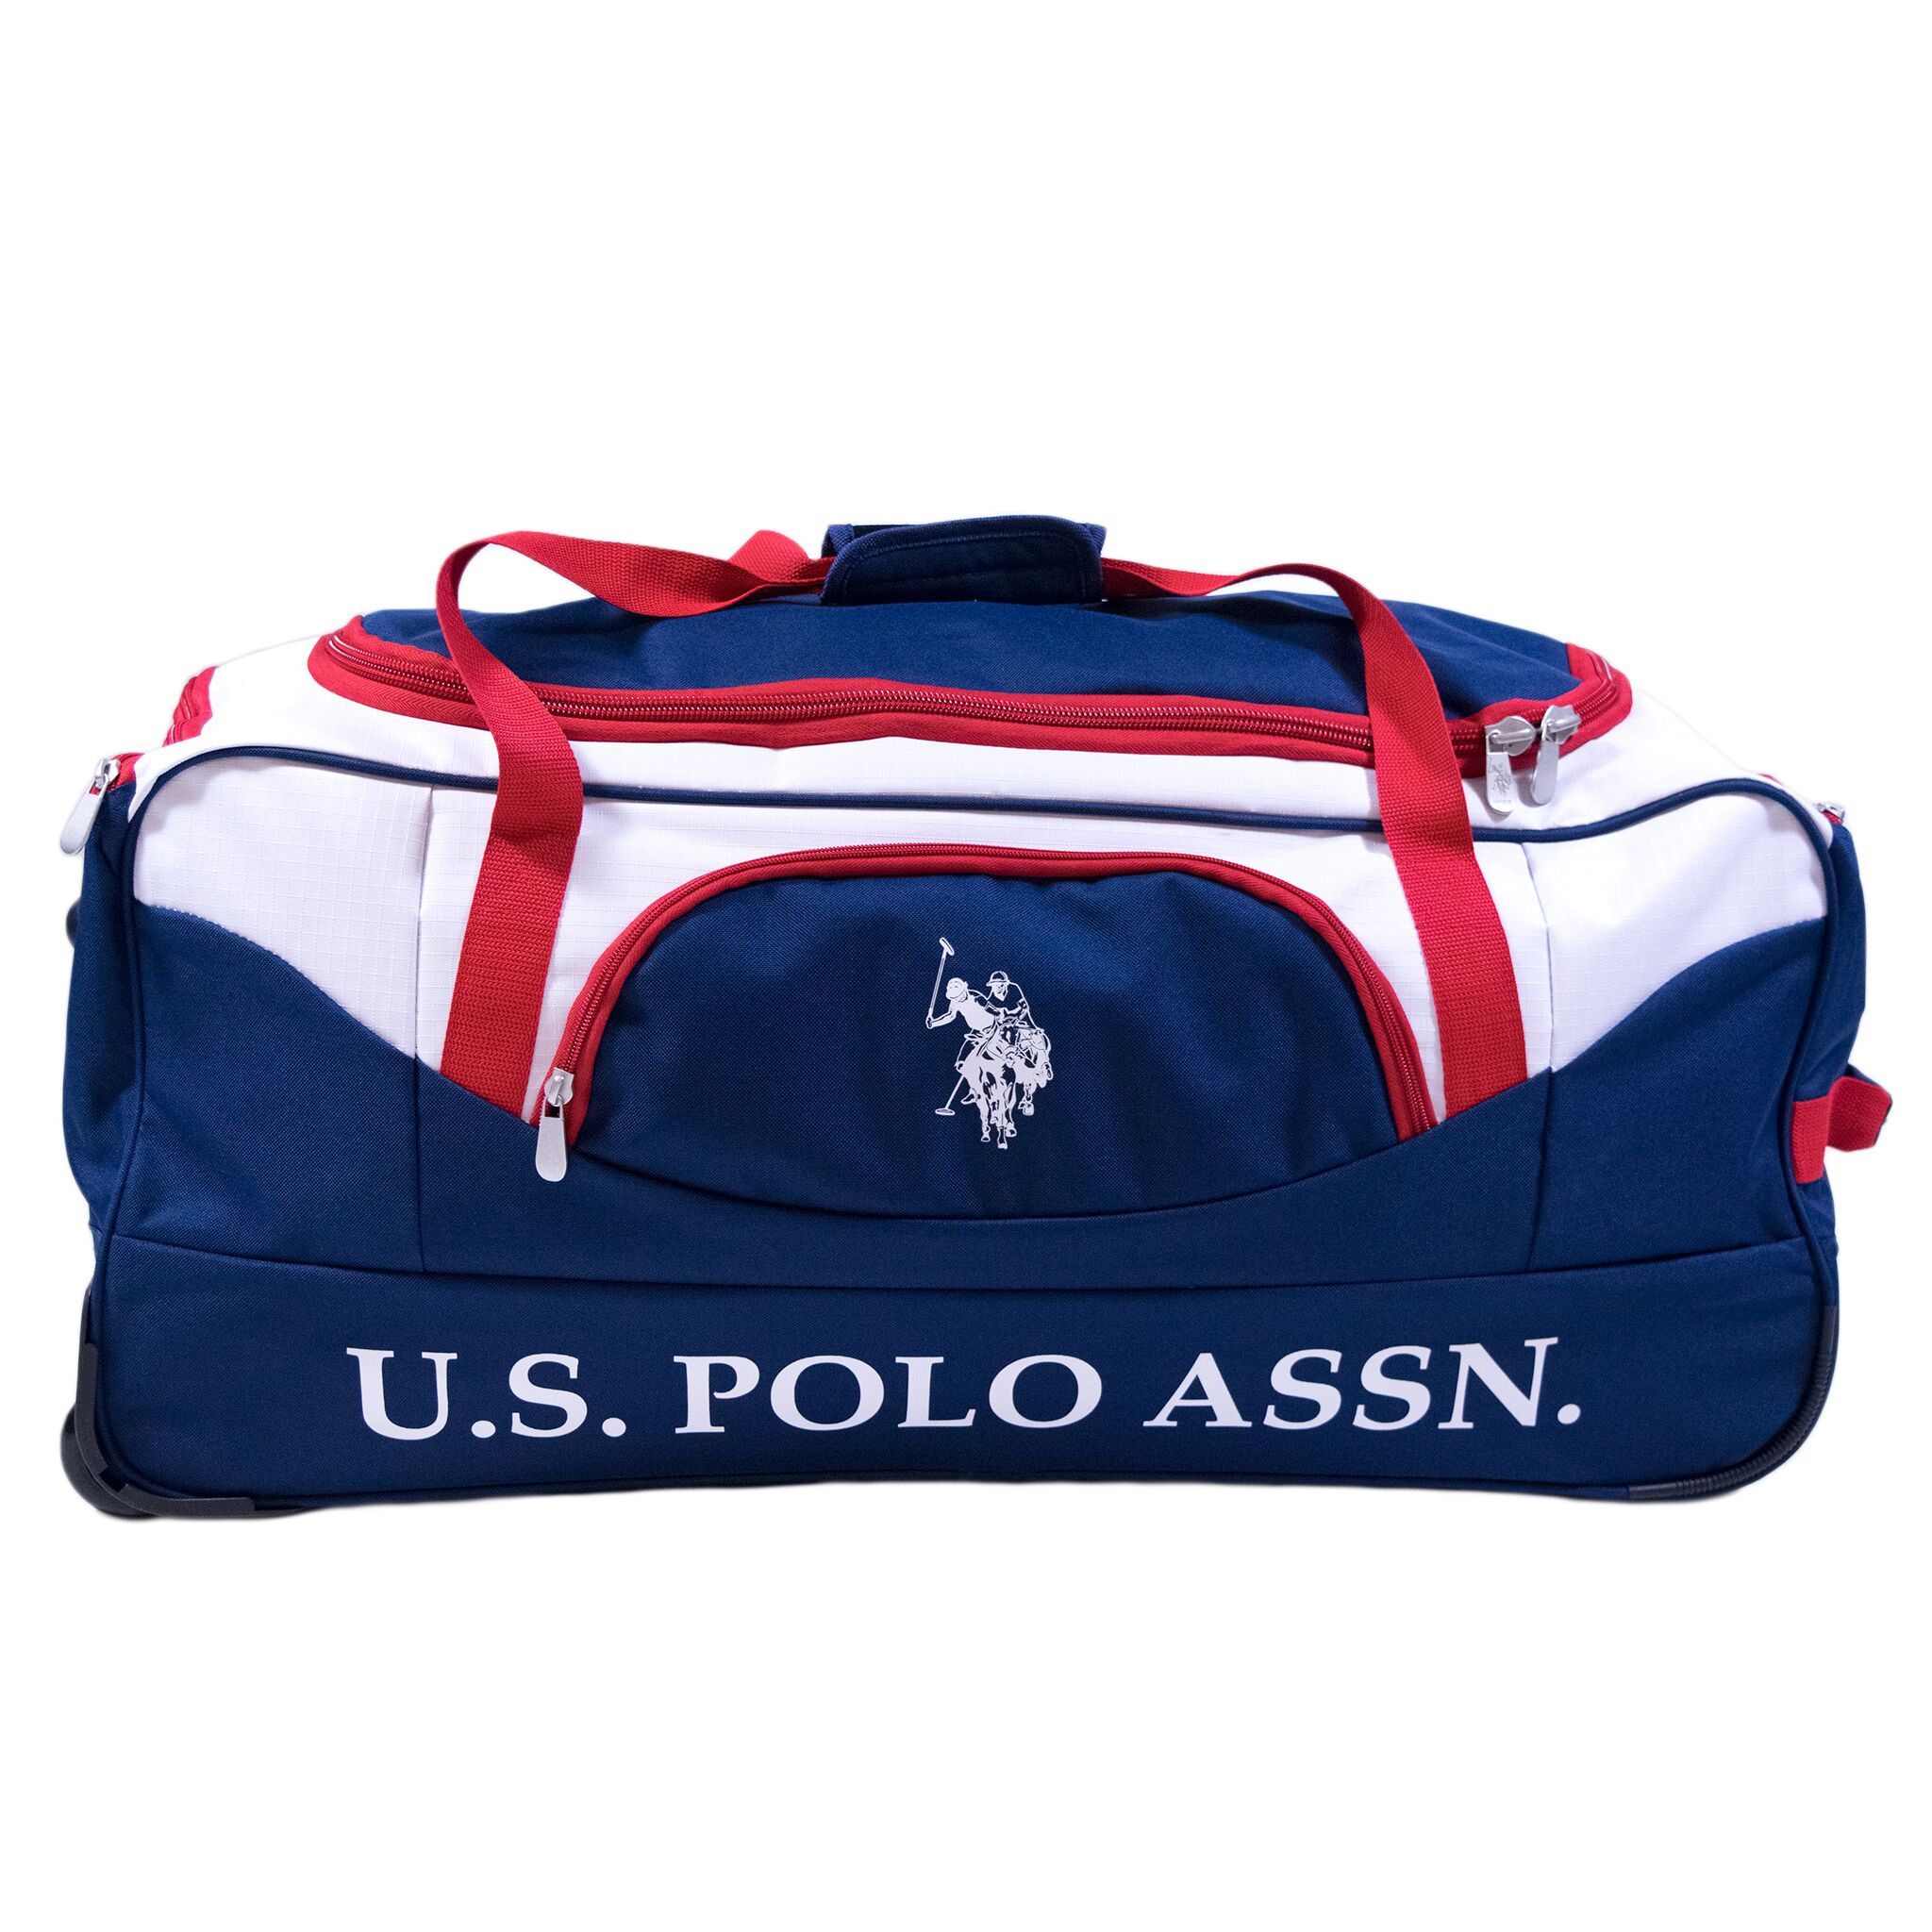 U.S. Polo Assn. 30" Rolling Duffel Bag